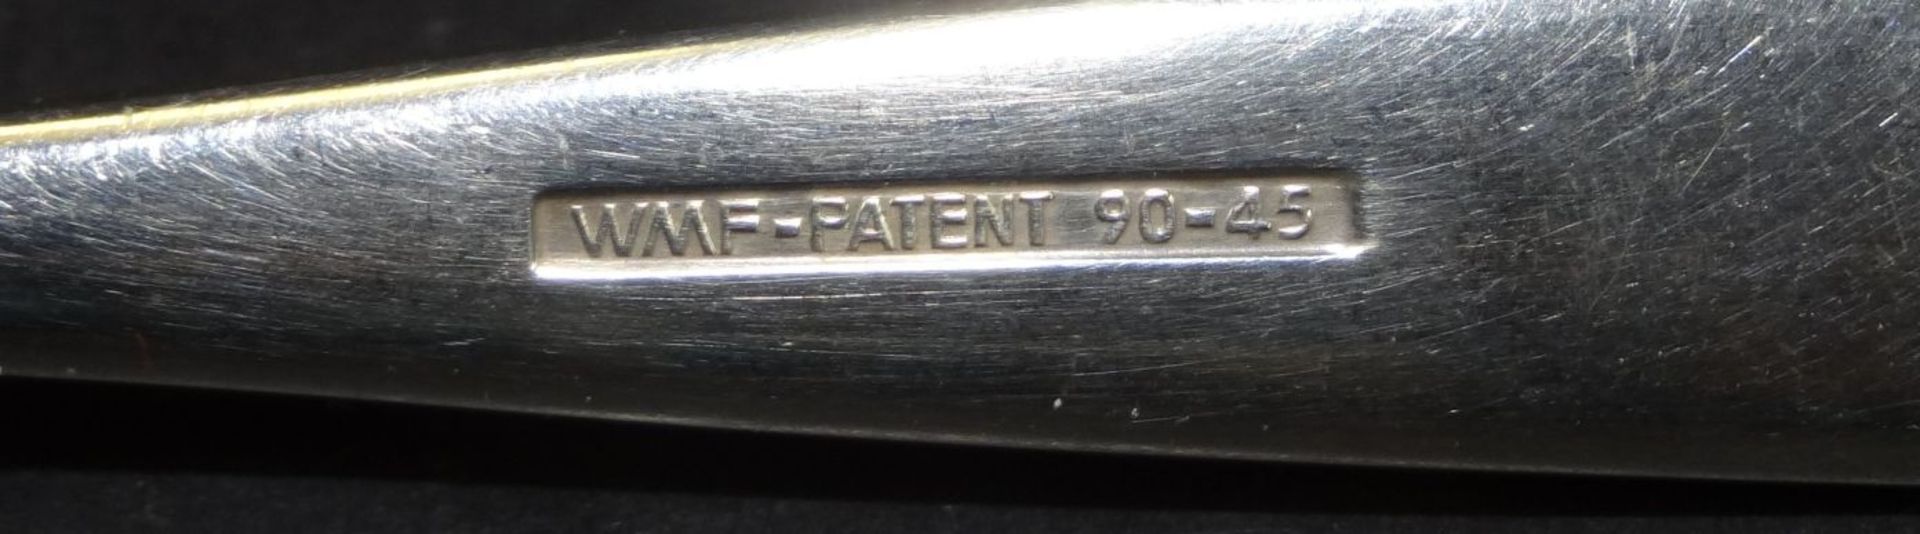 76 tg. versilbertes Besteck "WMF" Patent, 90-er Auflage, tw. in Karton - Bild 8 aus 10